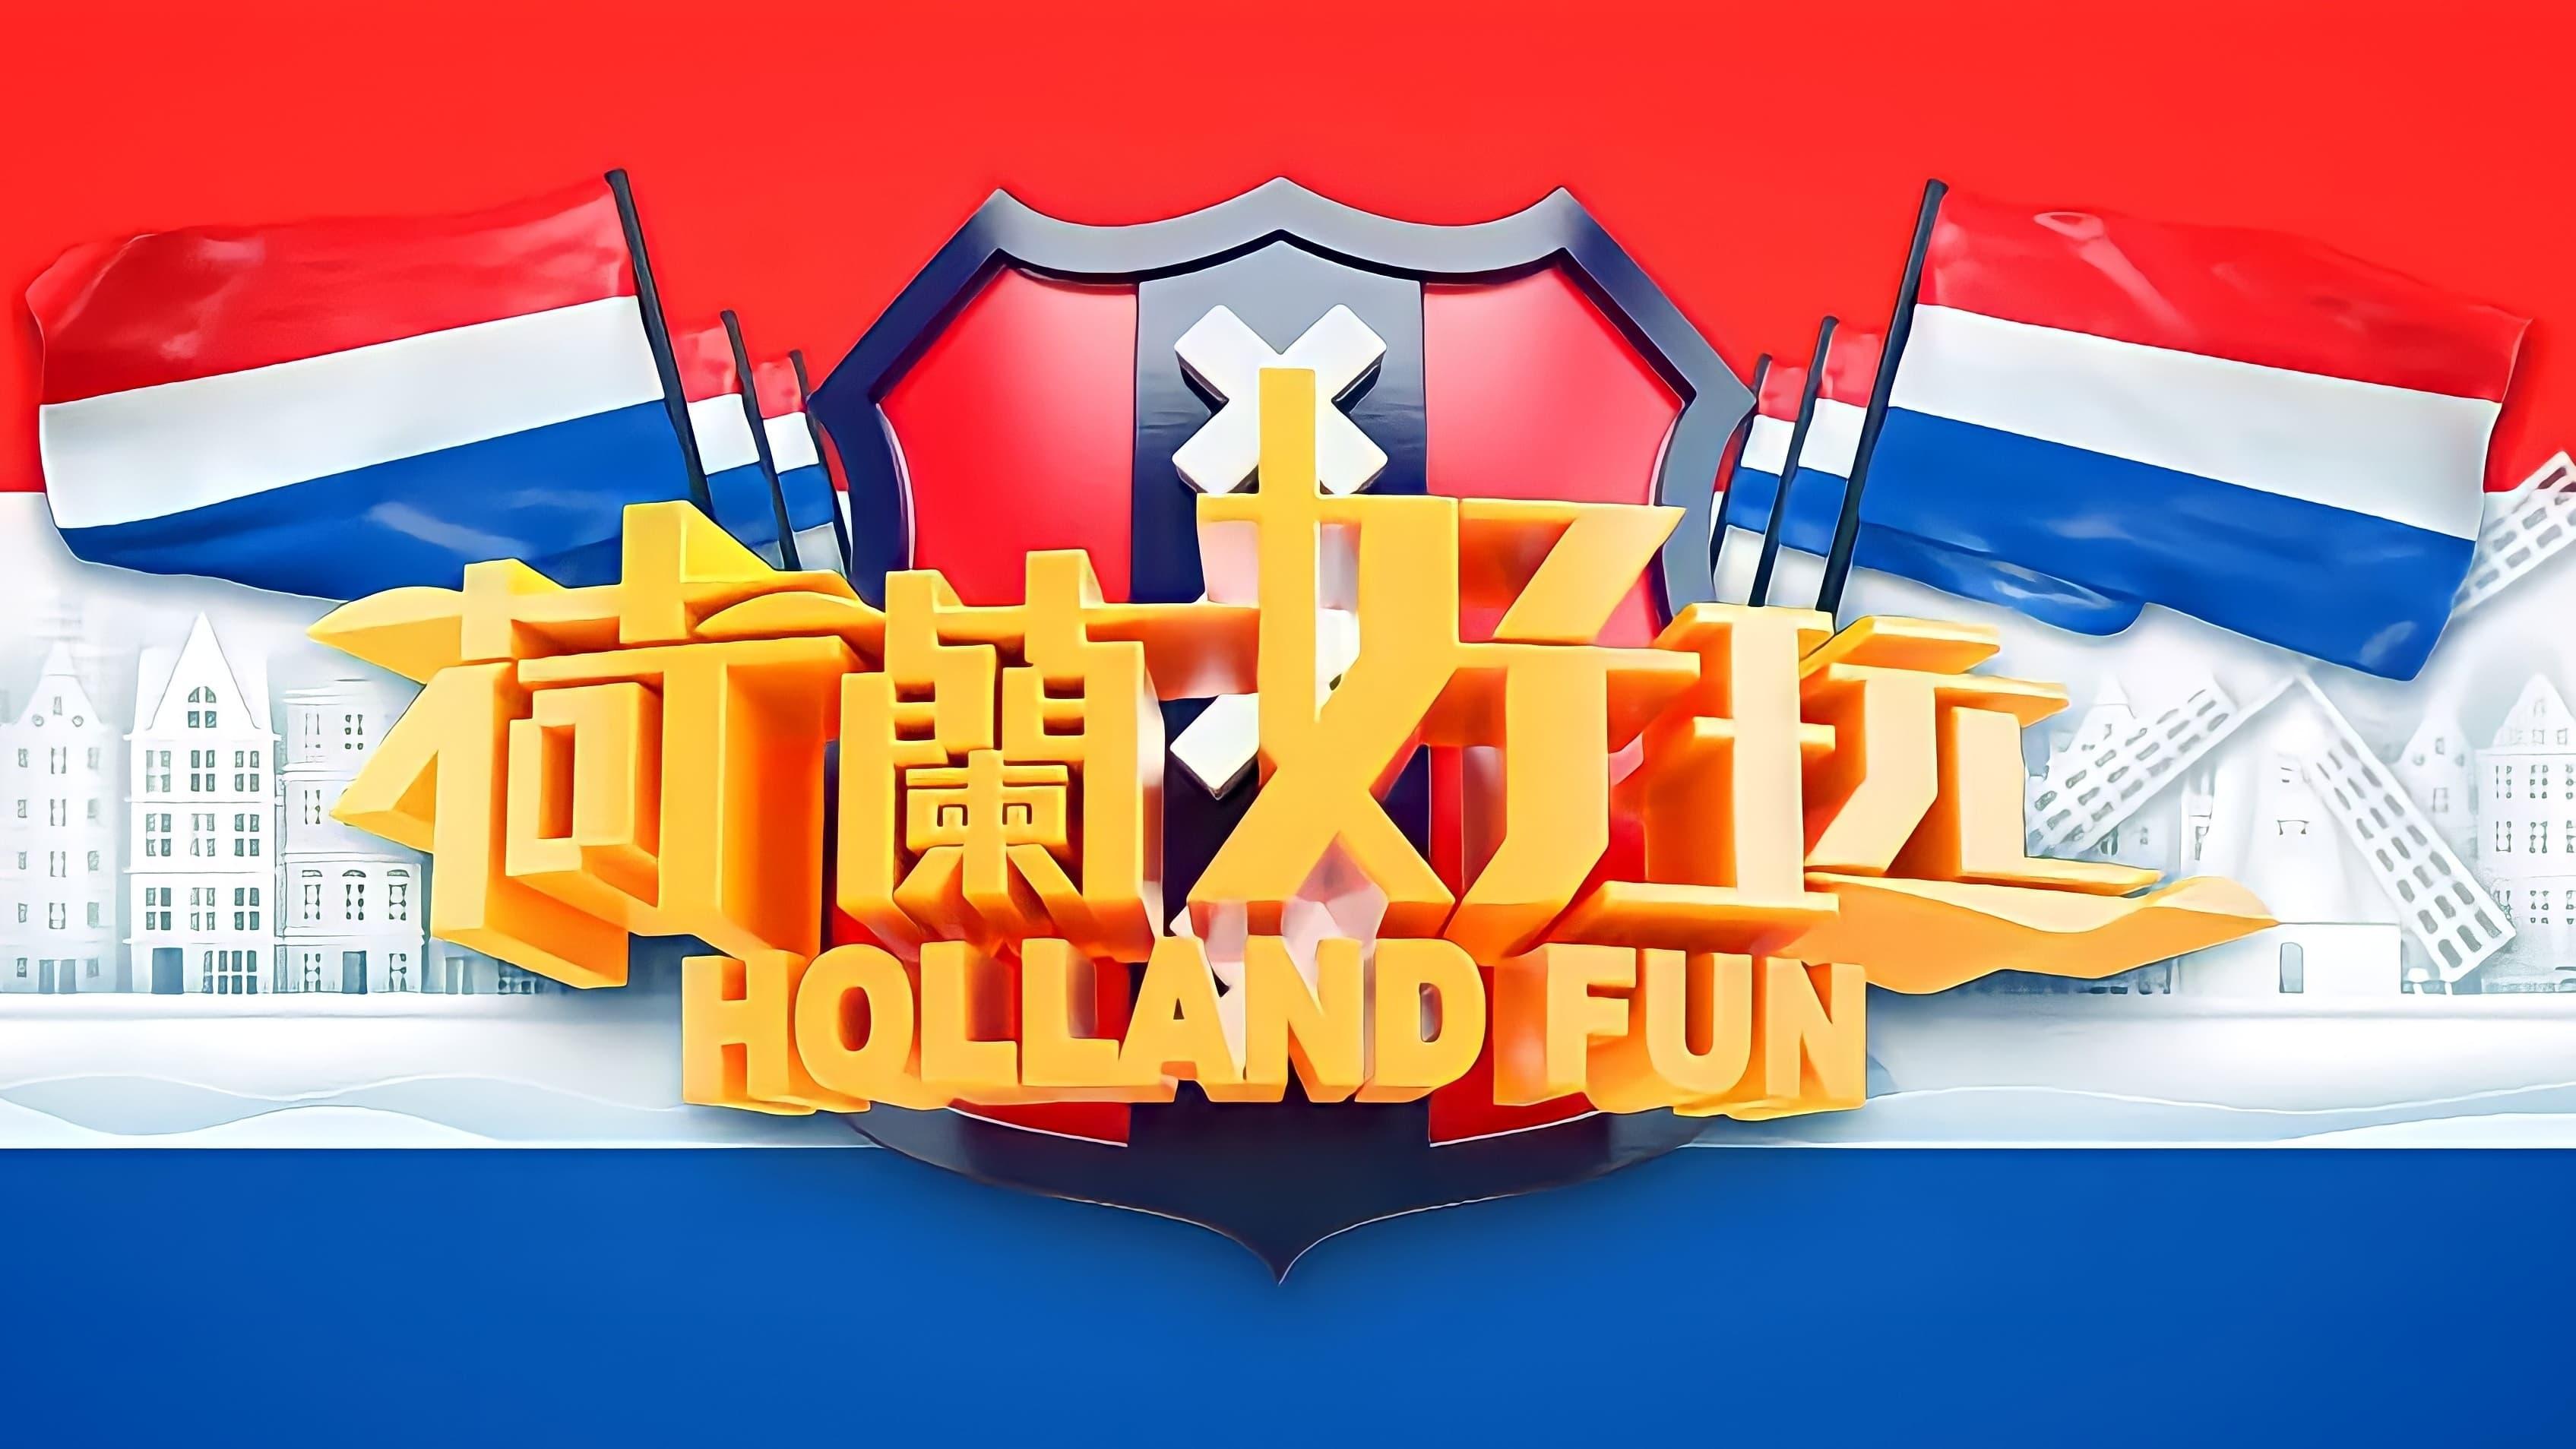 Holland Fun backdrop